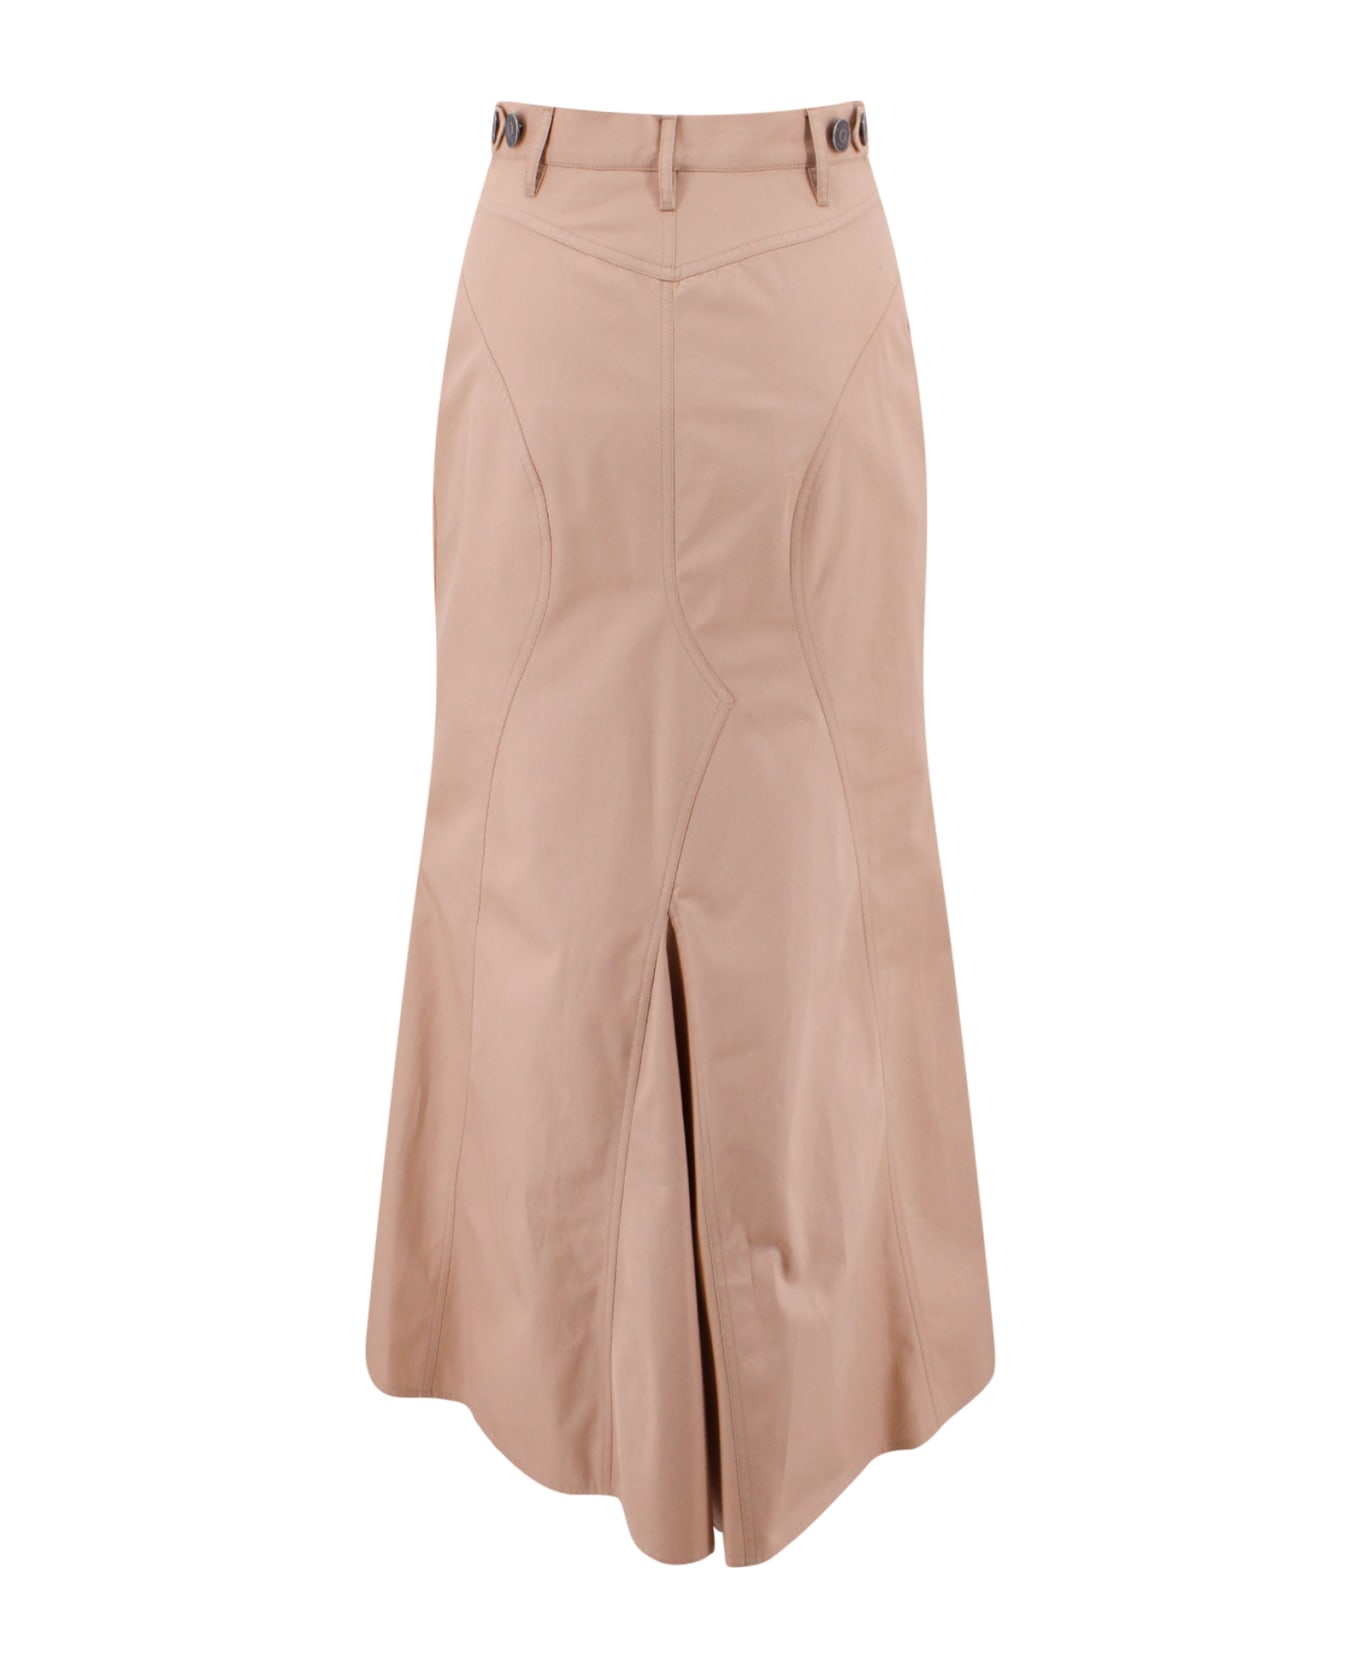 Burberry Cotton Gabardine Long Skirt - Beige スカート